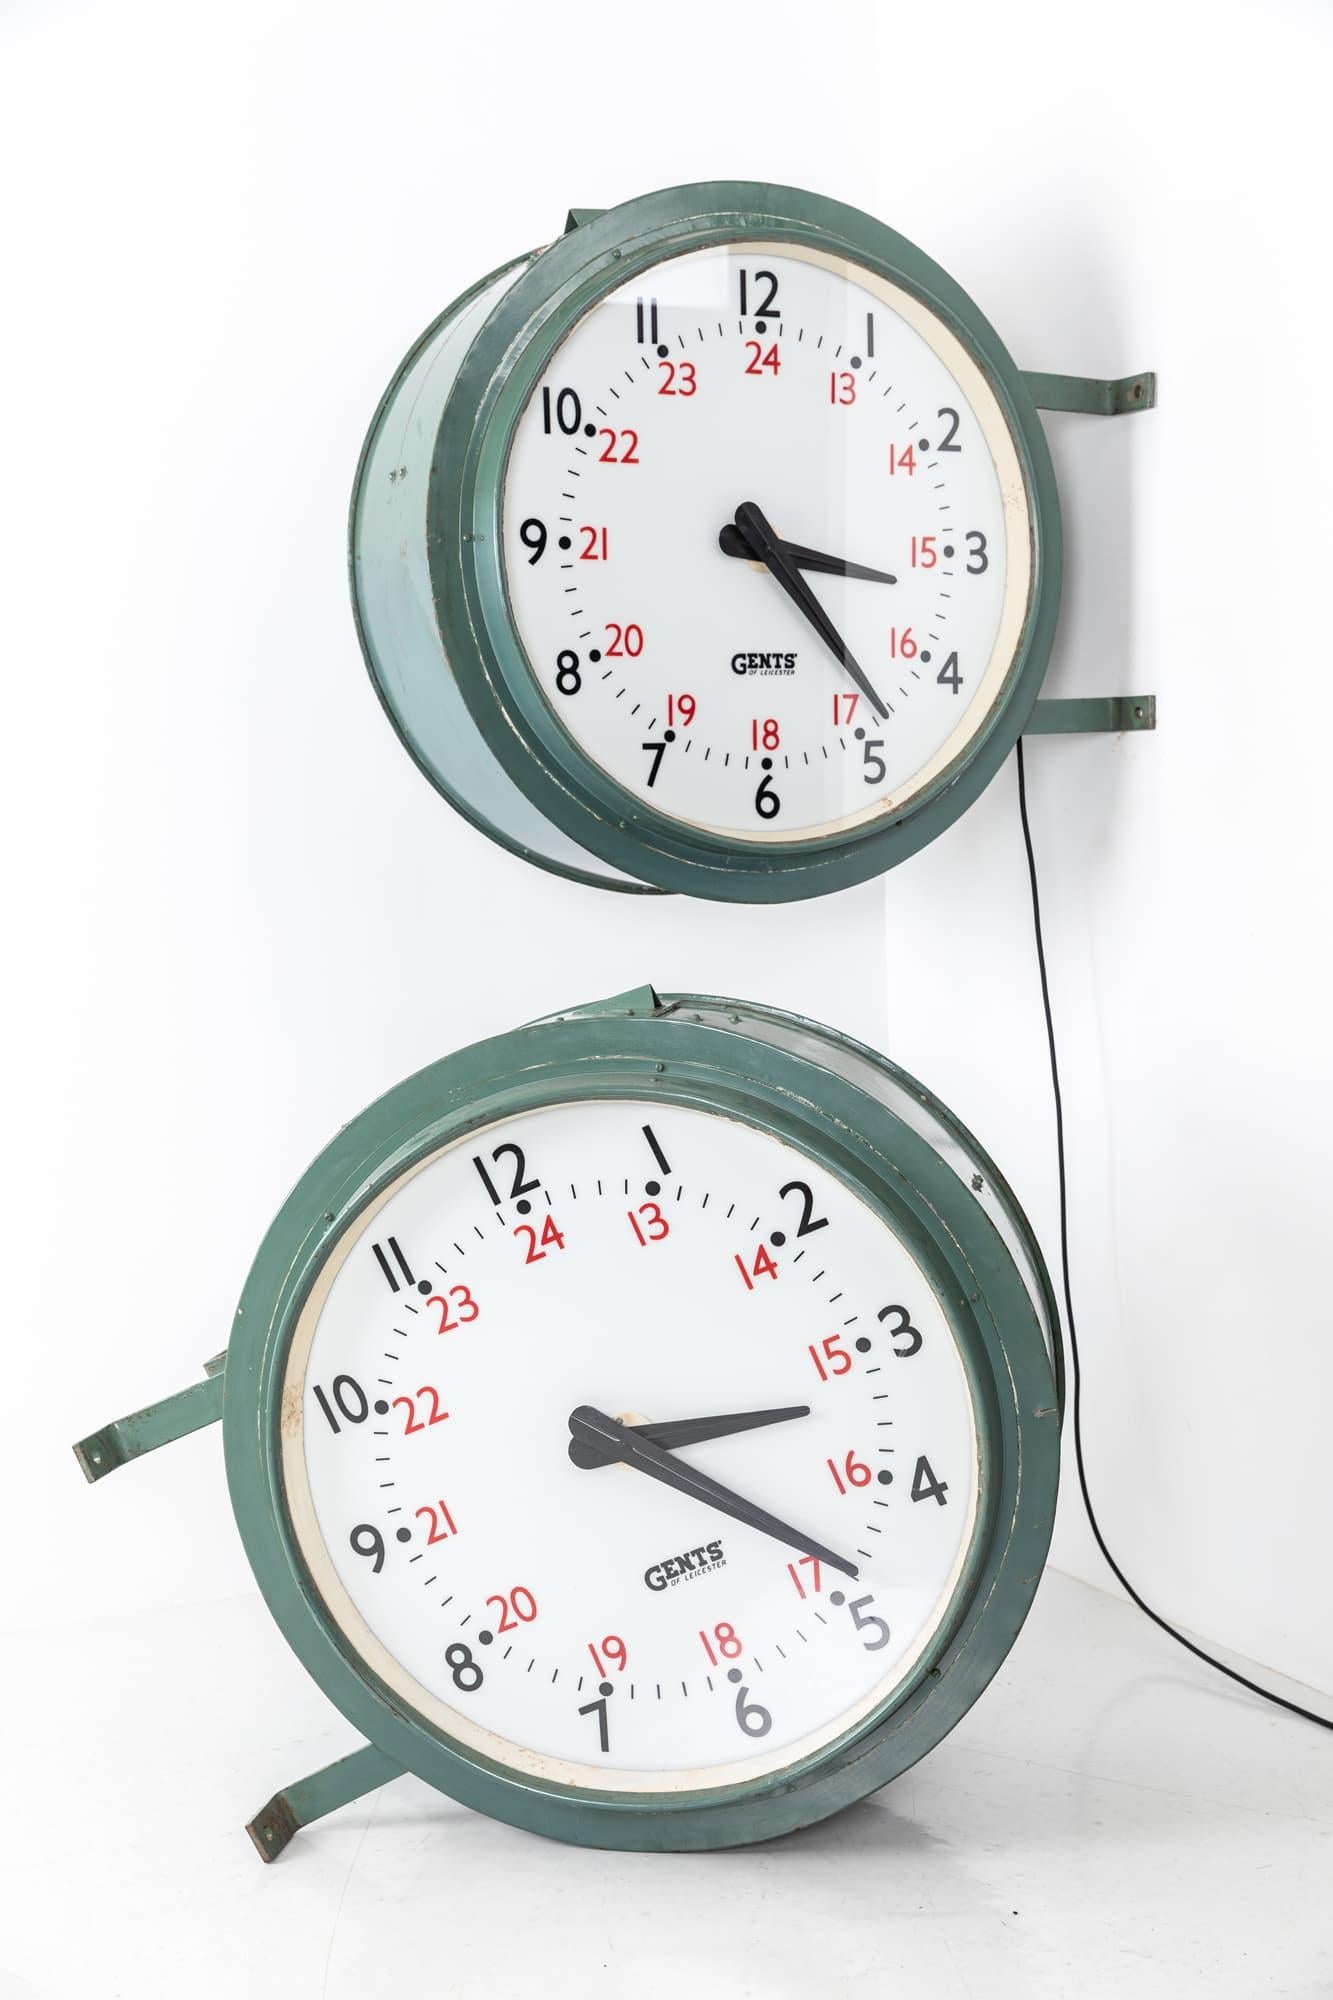 

Une incroyable paire de grandes horloges de chemin de fer illuminées fabriquées en Angleterre par Gents of Leicester. C.C.

On pense qu'il a été accroché à l'origine dans la gare centrale de Cardiff. Horloges murales à tambour double face en